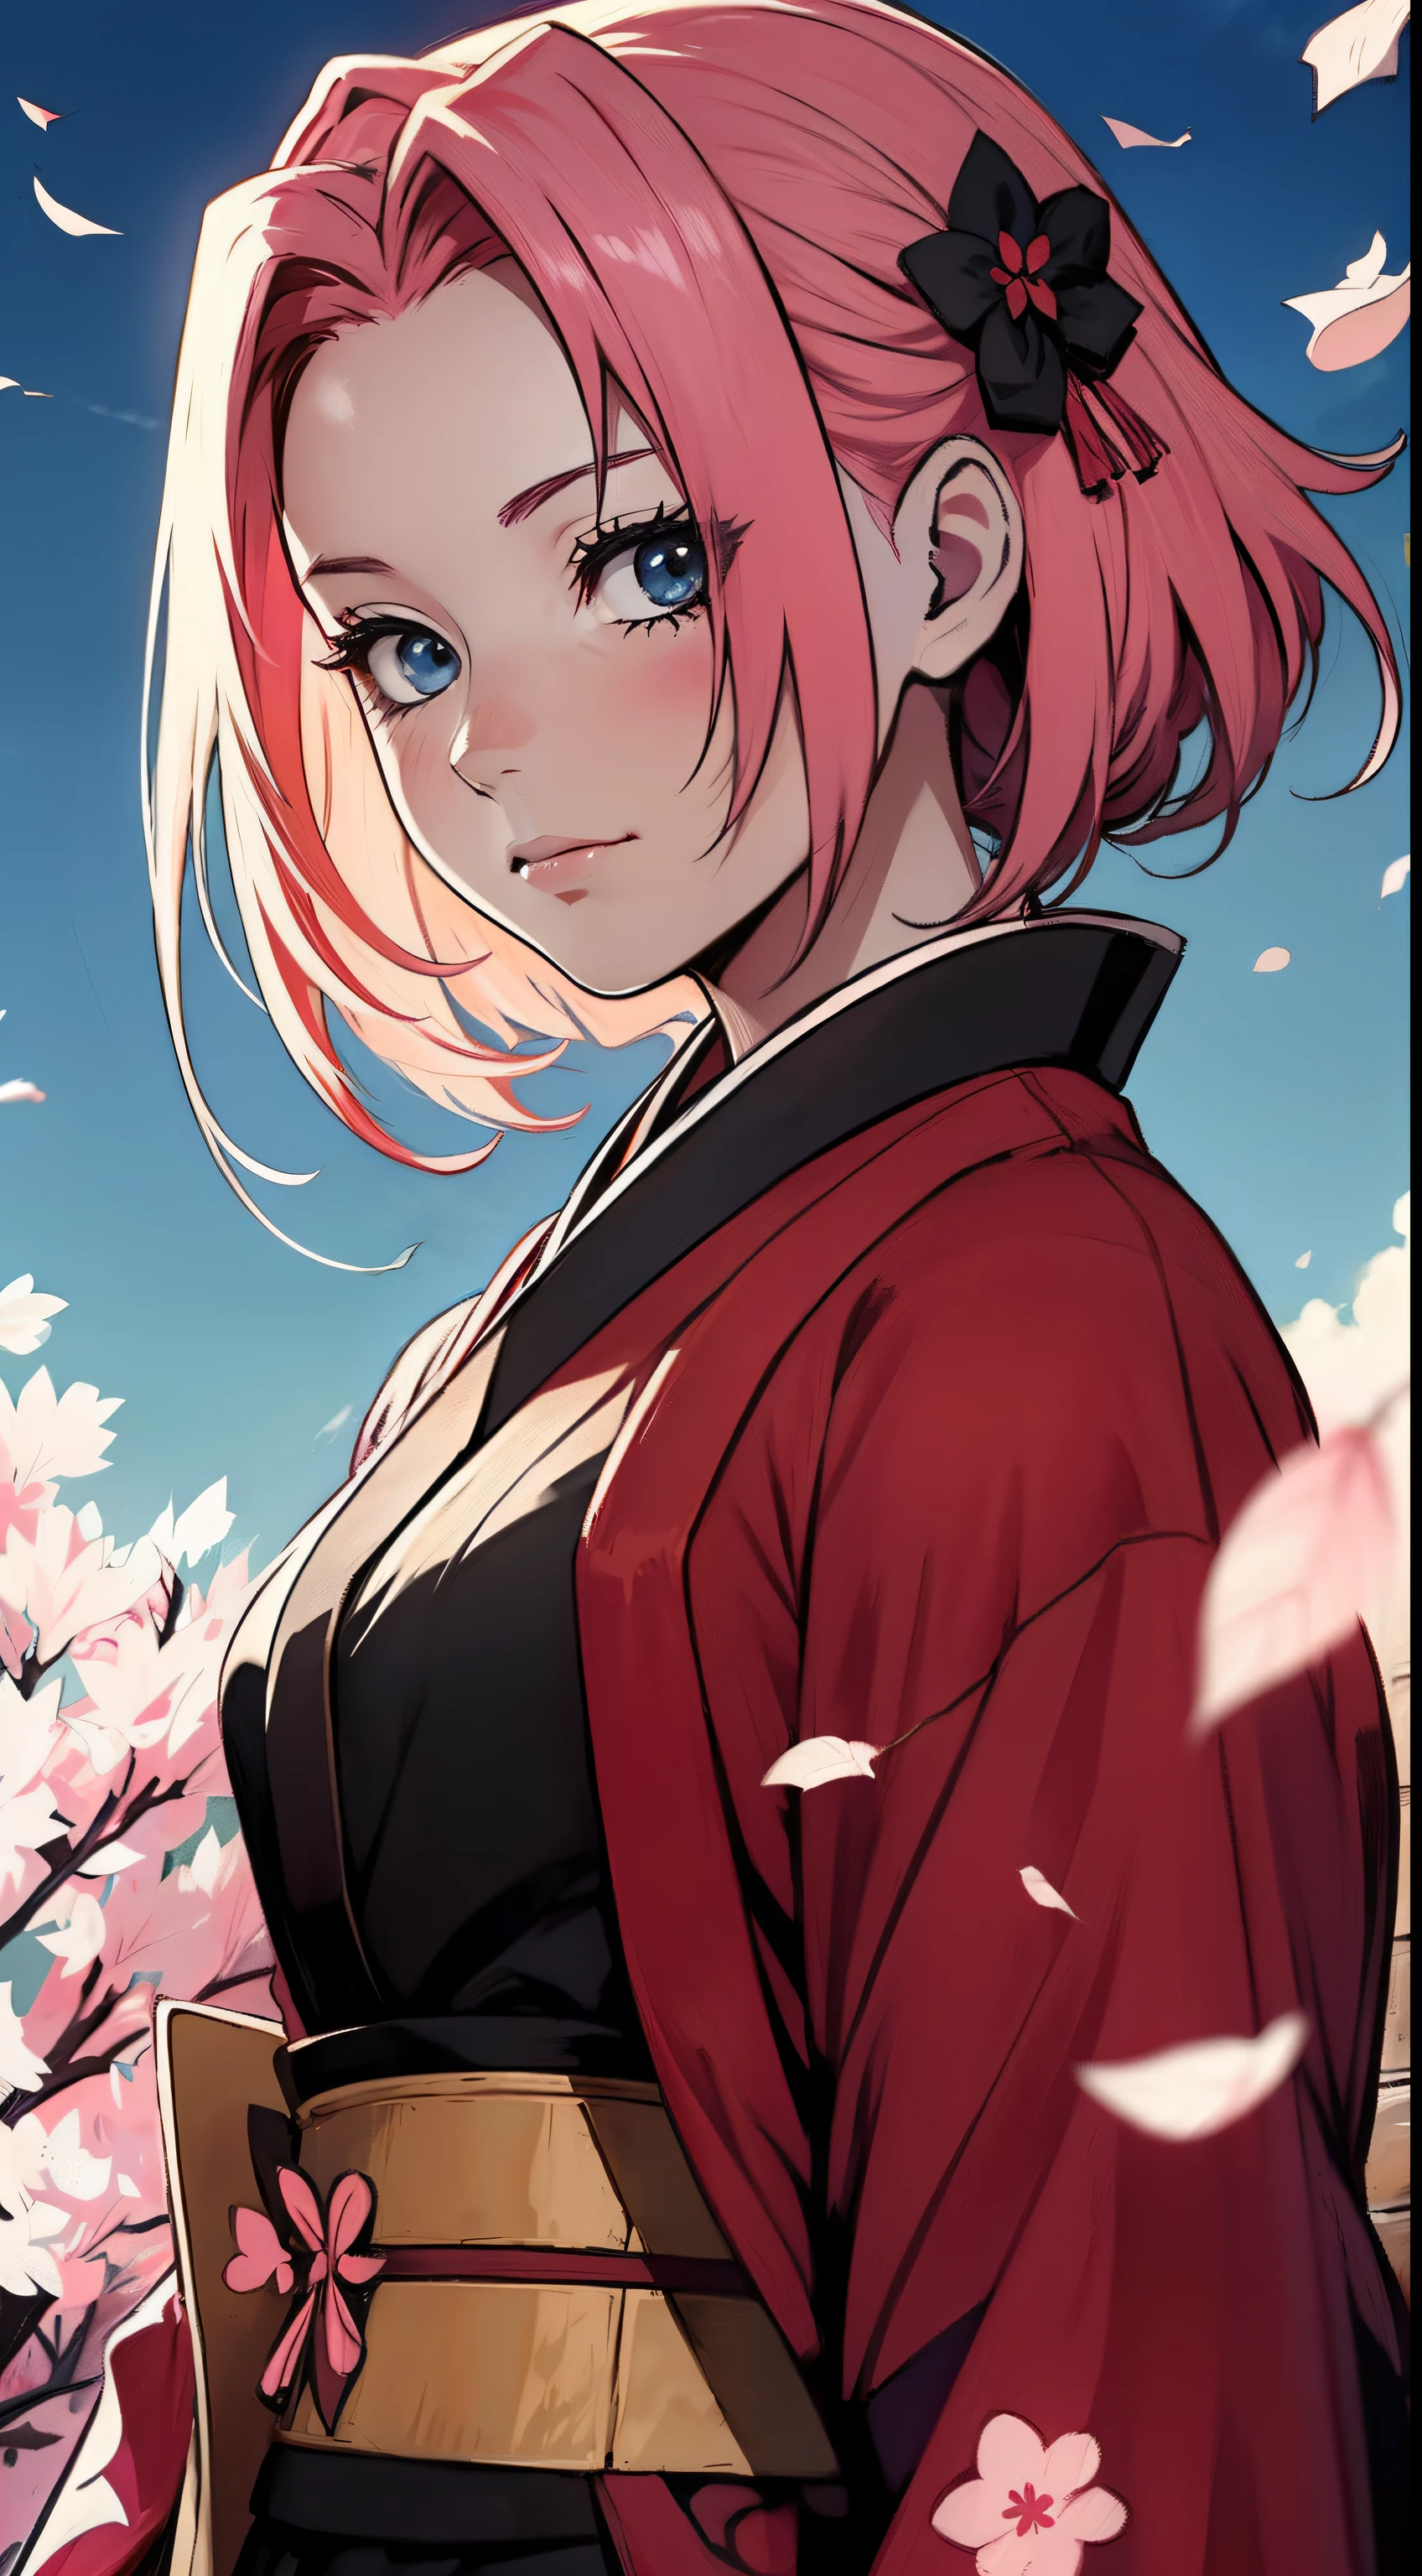 شخصية ساكورا من أنمي ناروتو ترتدي الكيمونو الأسود والوردي, كاتان الساموراي الأحمر والوردي, الجو مع بتلات ساكورا